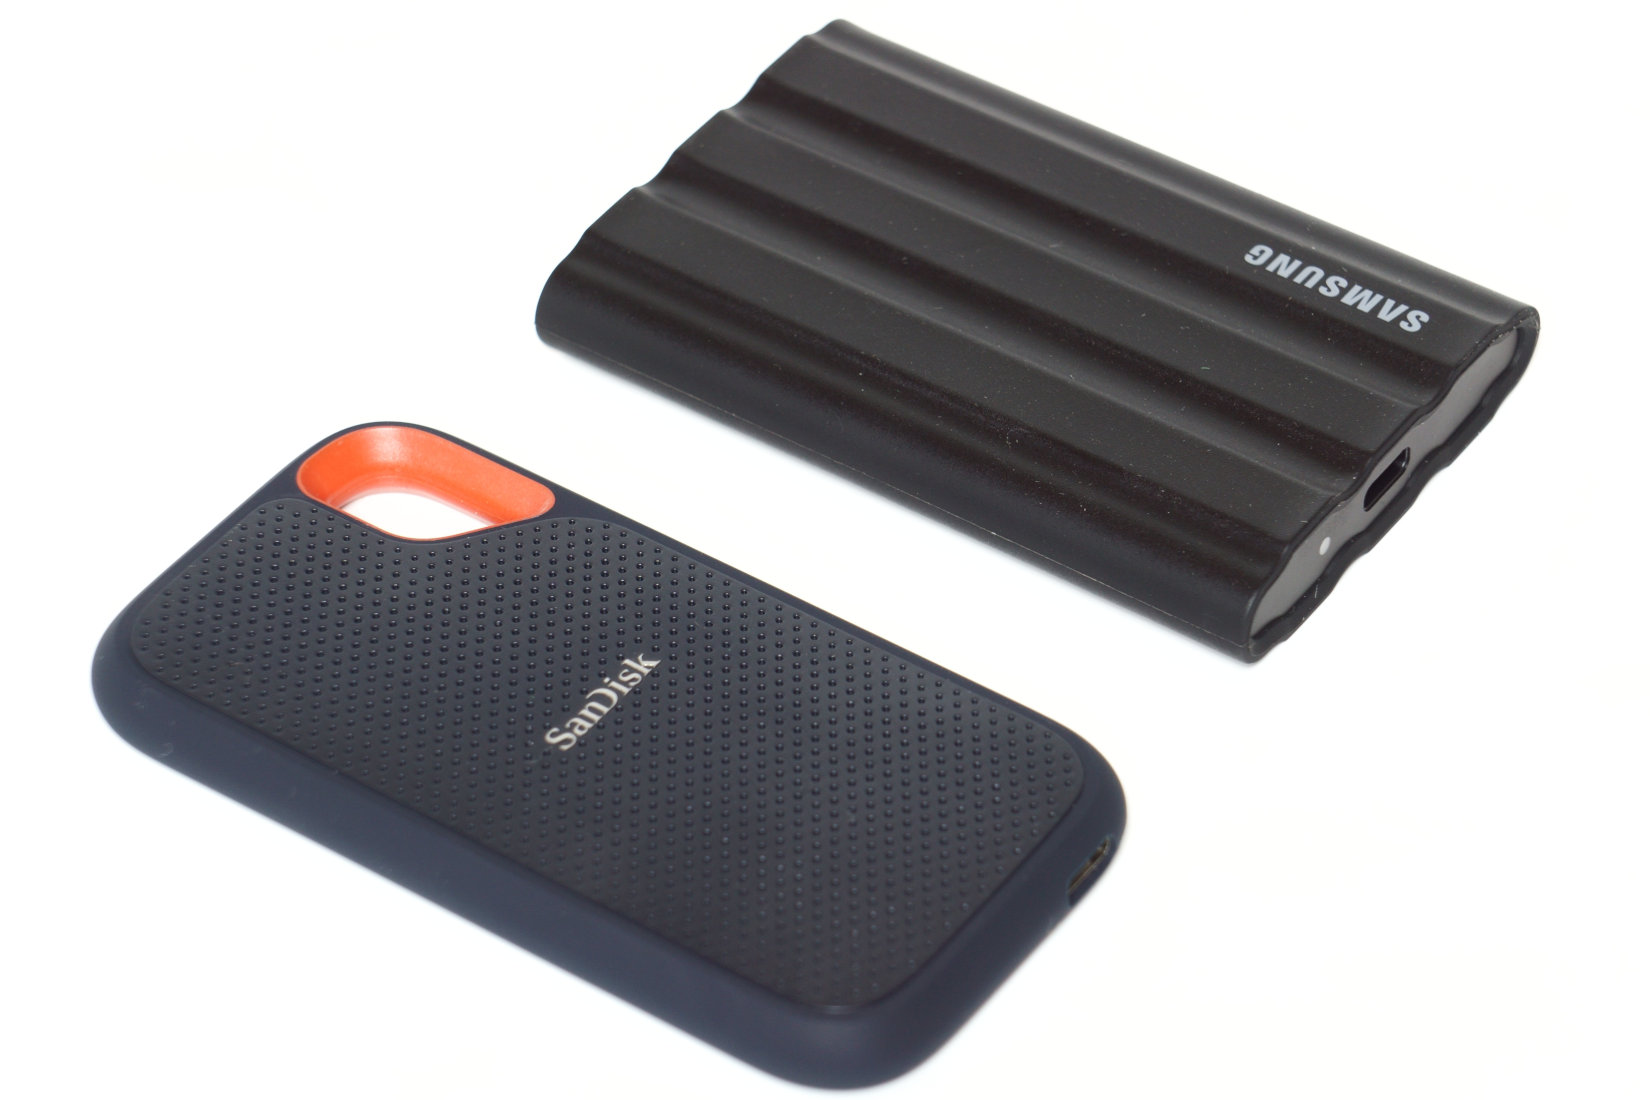 Externe SSDs Test: Samsung Portable SSD T7 Shield und SanDisk Extreme Portable  SSD V2 im Vergleich - Hardware-Helden | SSD-Festplatten